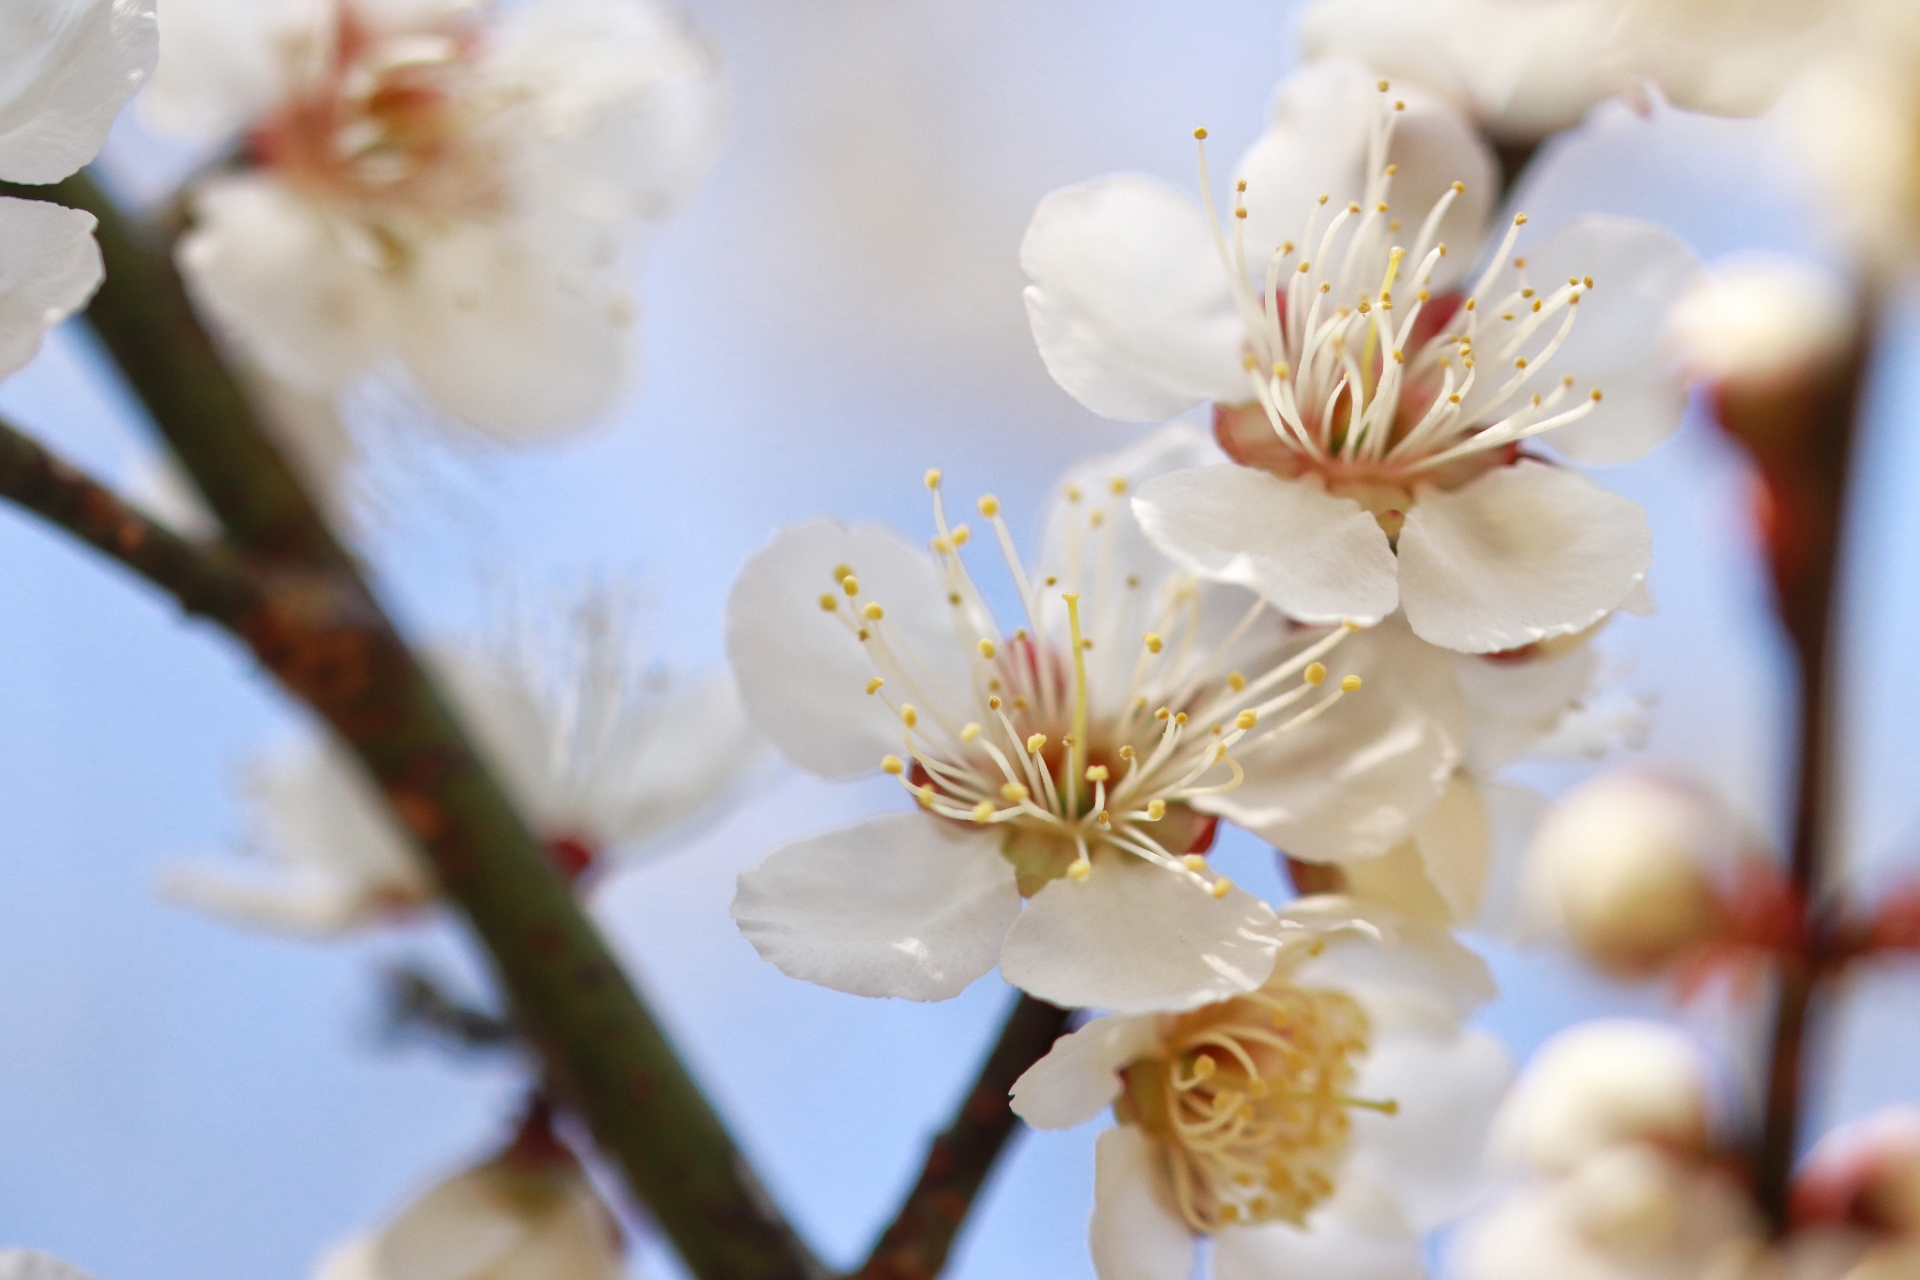 吉野梅園の梅21 梅まつりや開花状況など紹介 中止 情報発信ブログサイト Blue Rose